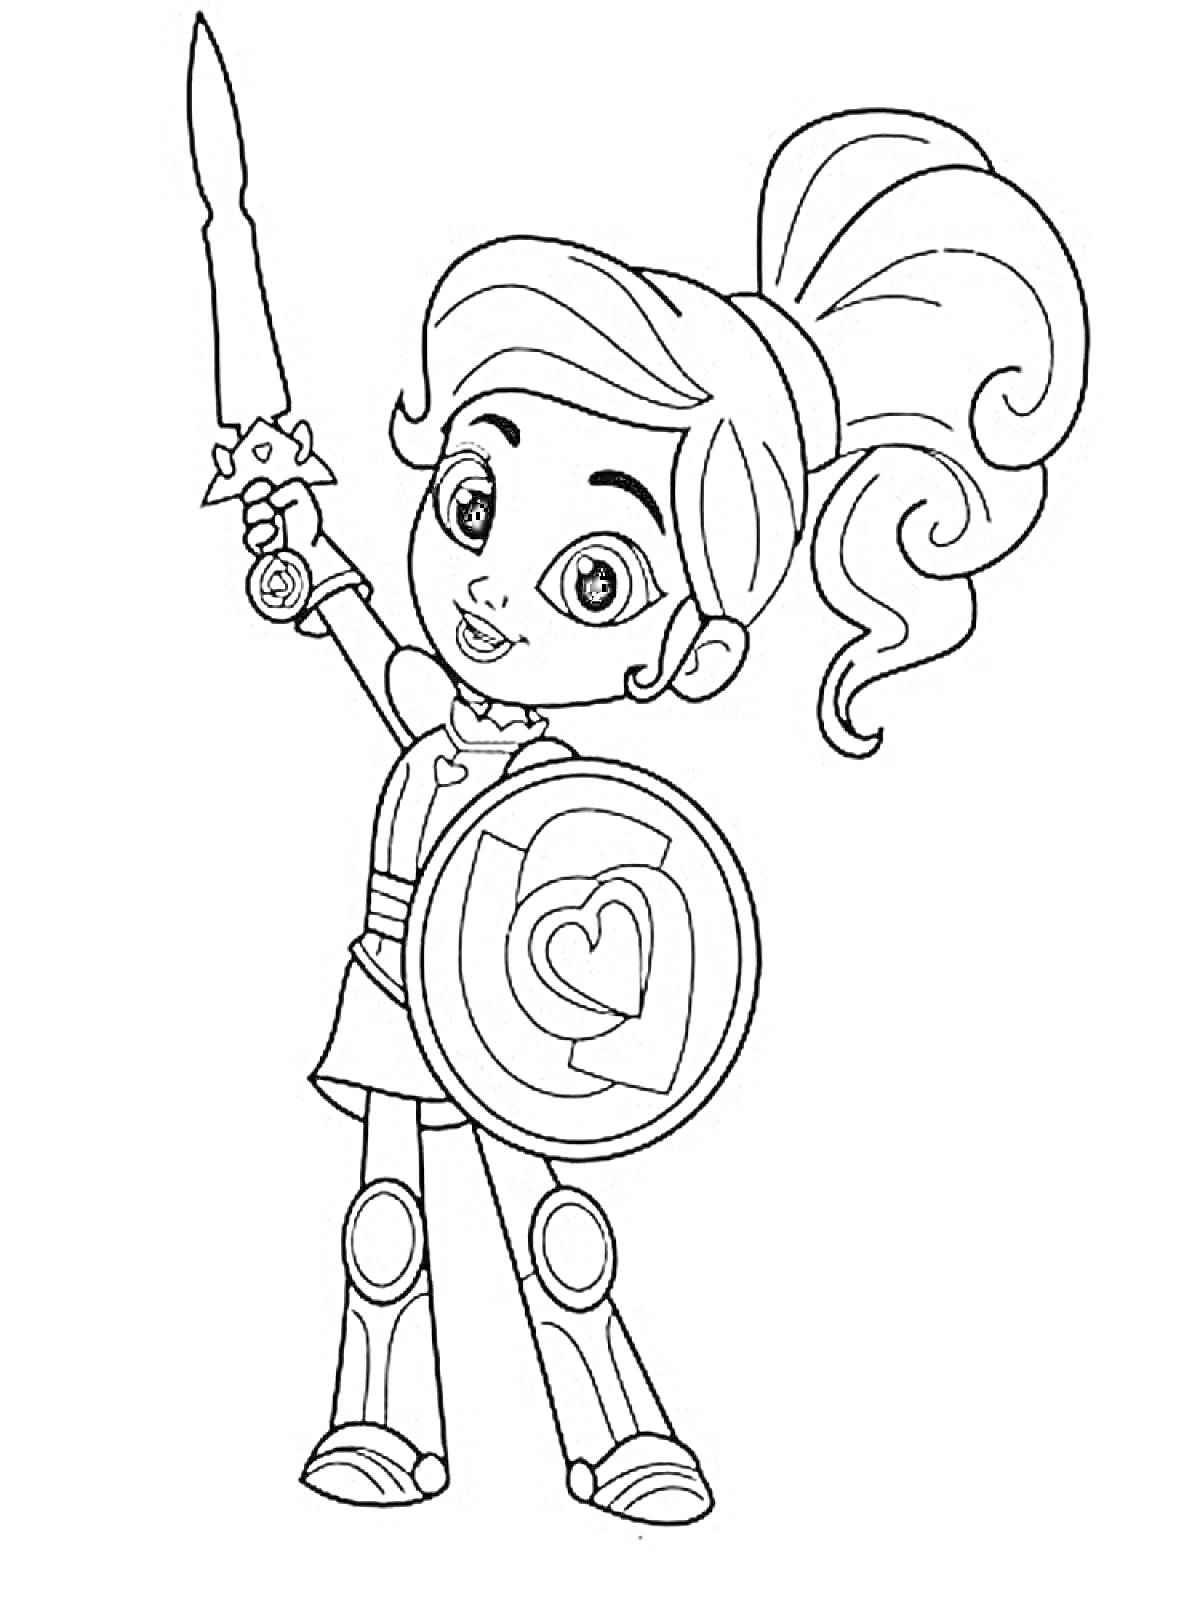 Раскраска Нелла принцесса рыцарь с мечом и щитом в виде сердца